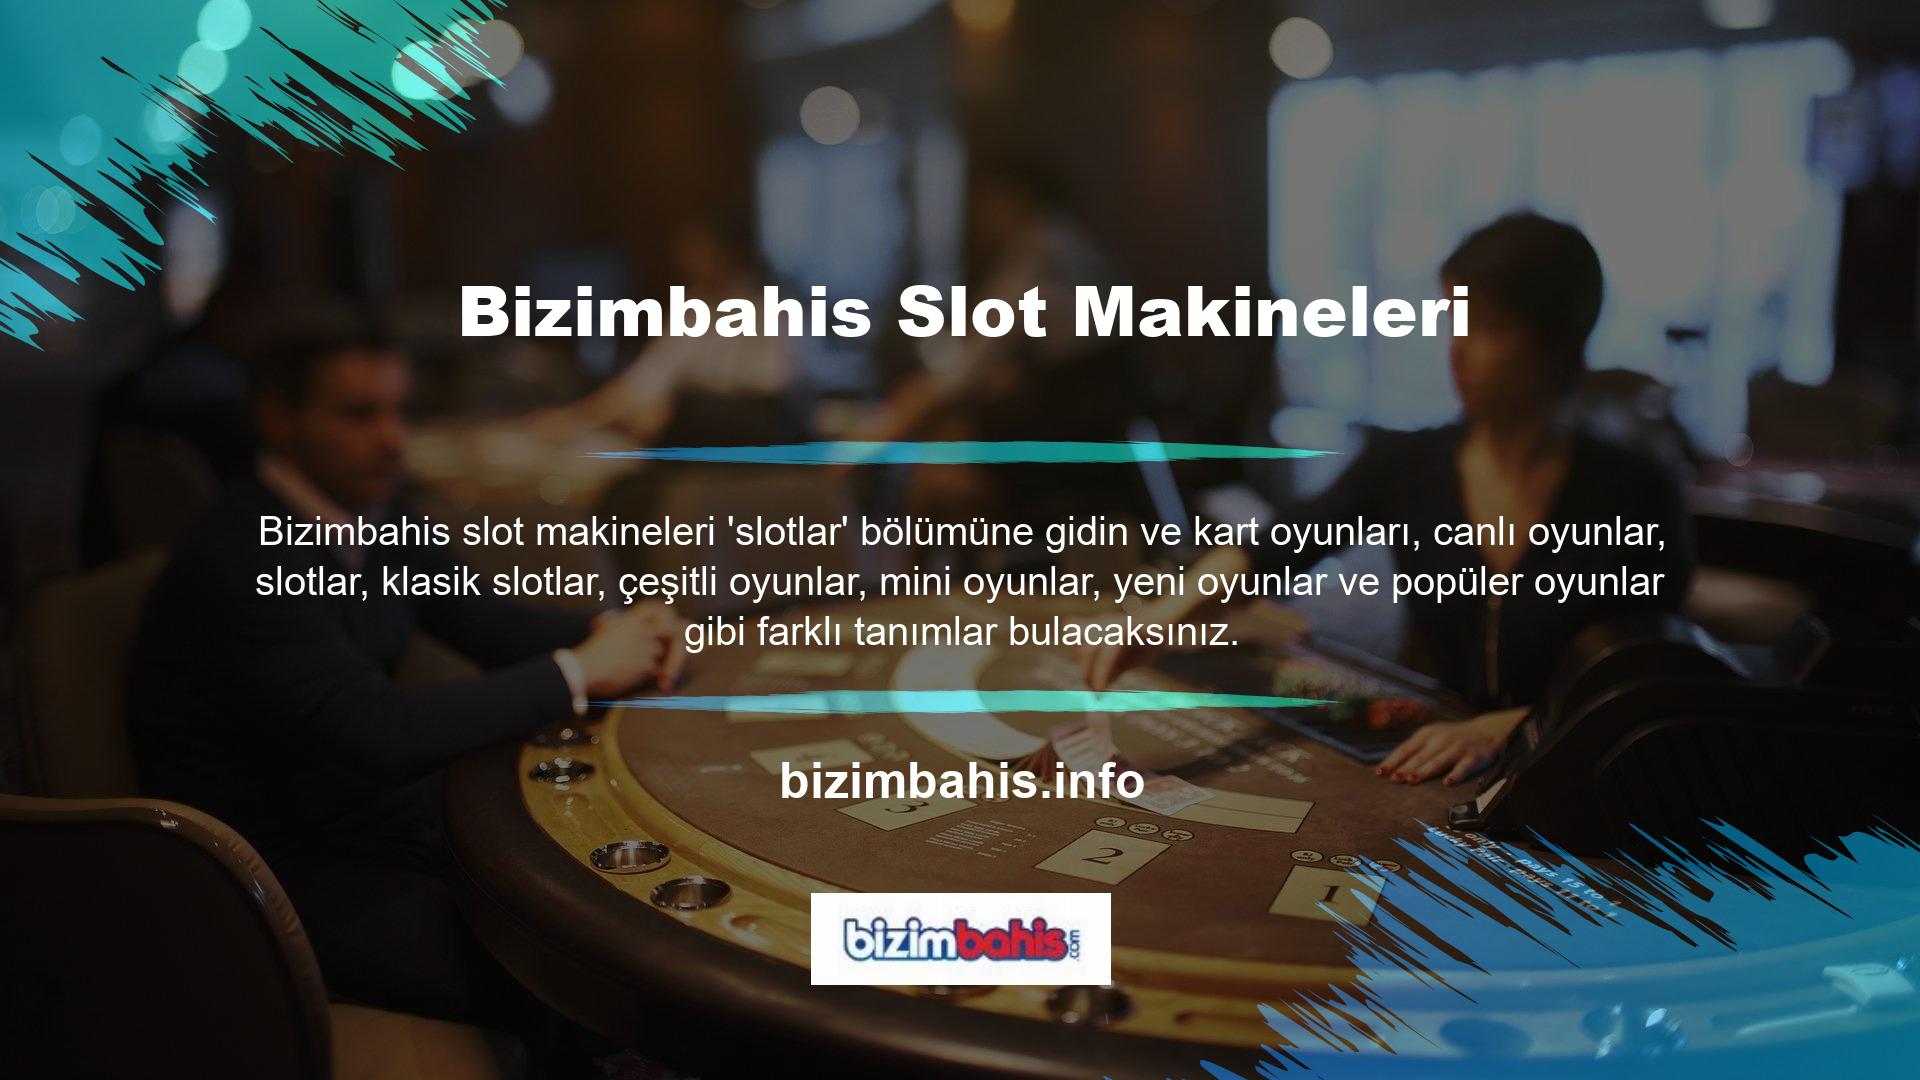 Slot konsepti, video poker, video slot ve video bingo gibi seçenekleri içerir